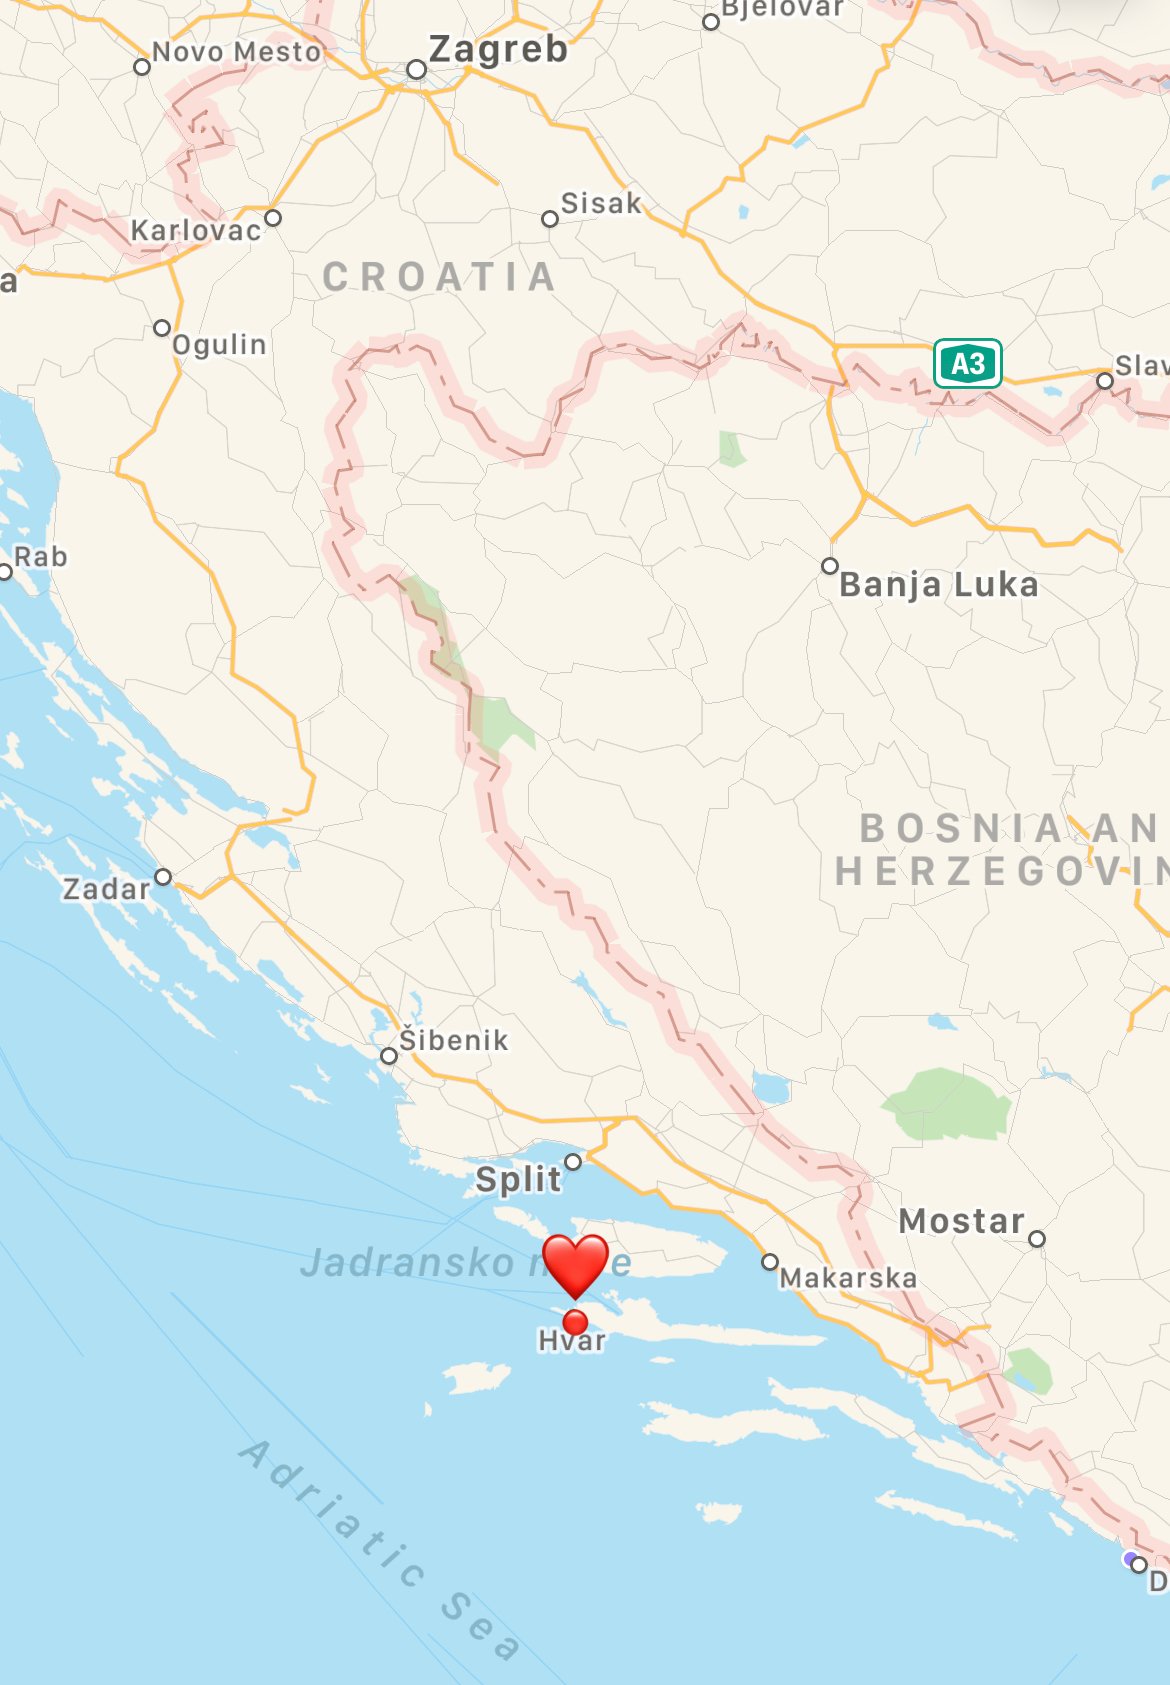 Where is Hvar in Croatia